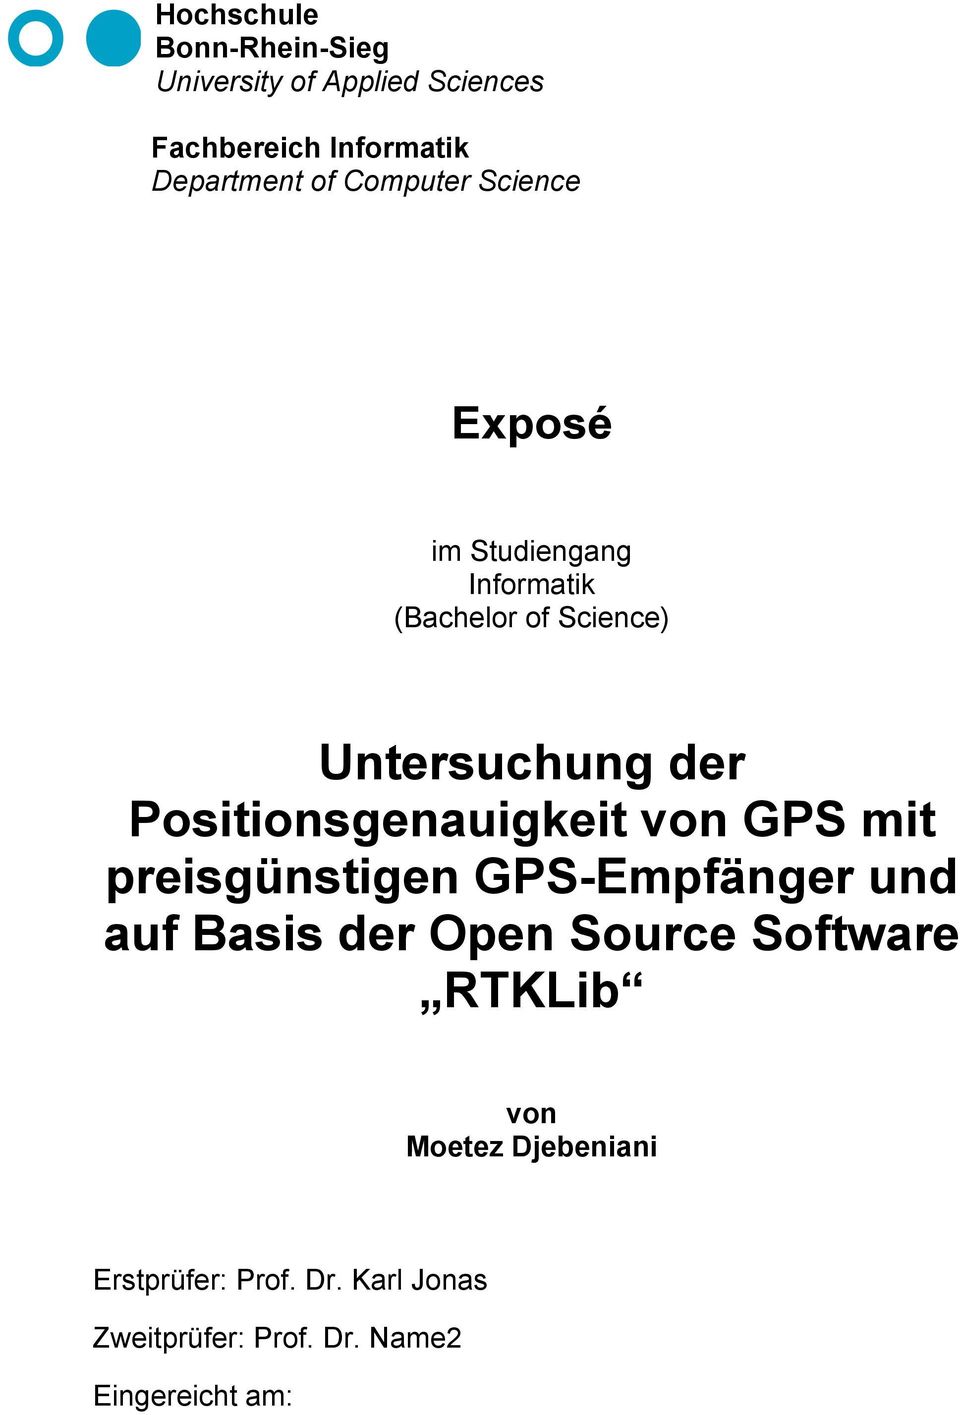 Positionsgenauigkeit von GPS mit preisgünstigen GPS-Empfänger und auf Basis der Open Source